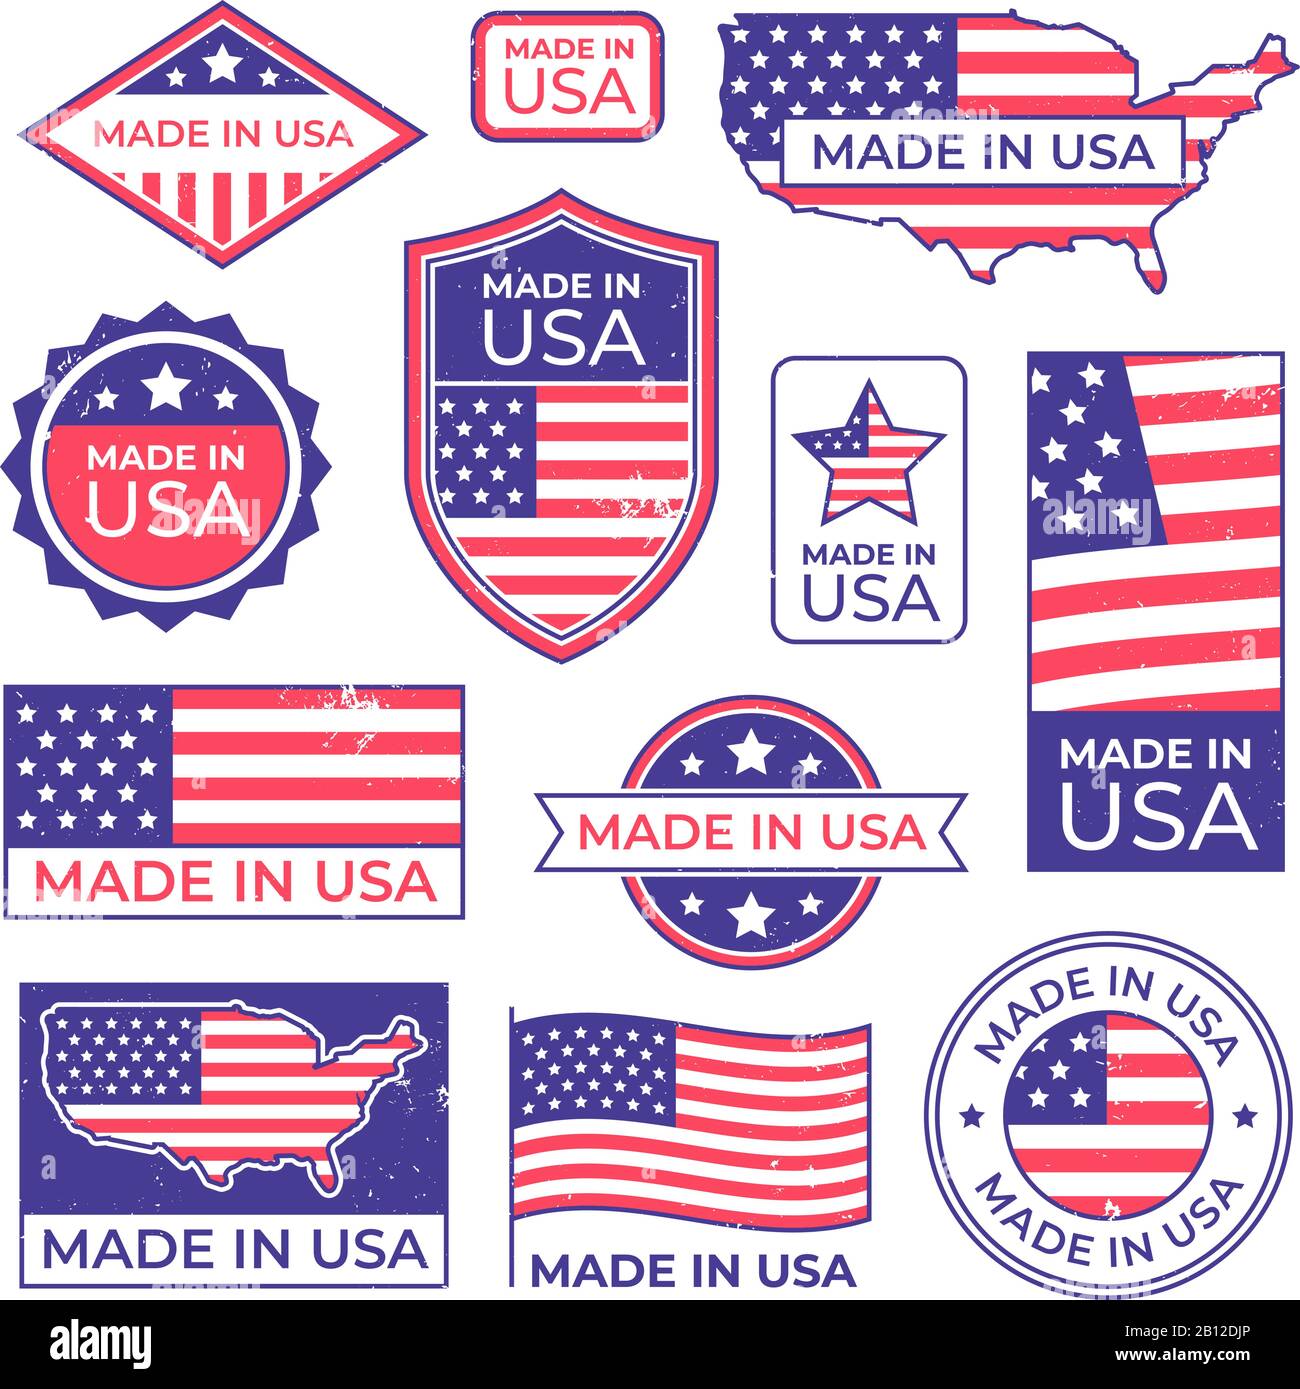 Logo fabriqué aux états-unis. Américain fier patriote tag, fabrication pour le timbre d'étiquette des états-unis et etats-unis d'amérique patriotique ensemble de vecteur de drapeau Illustration de Vecteur